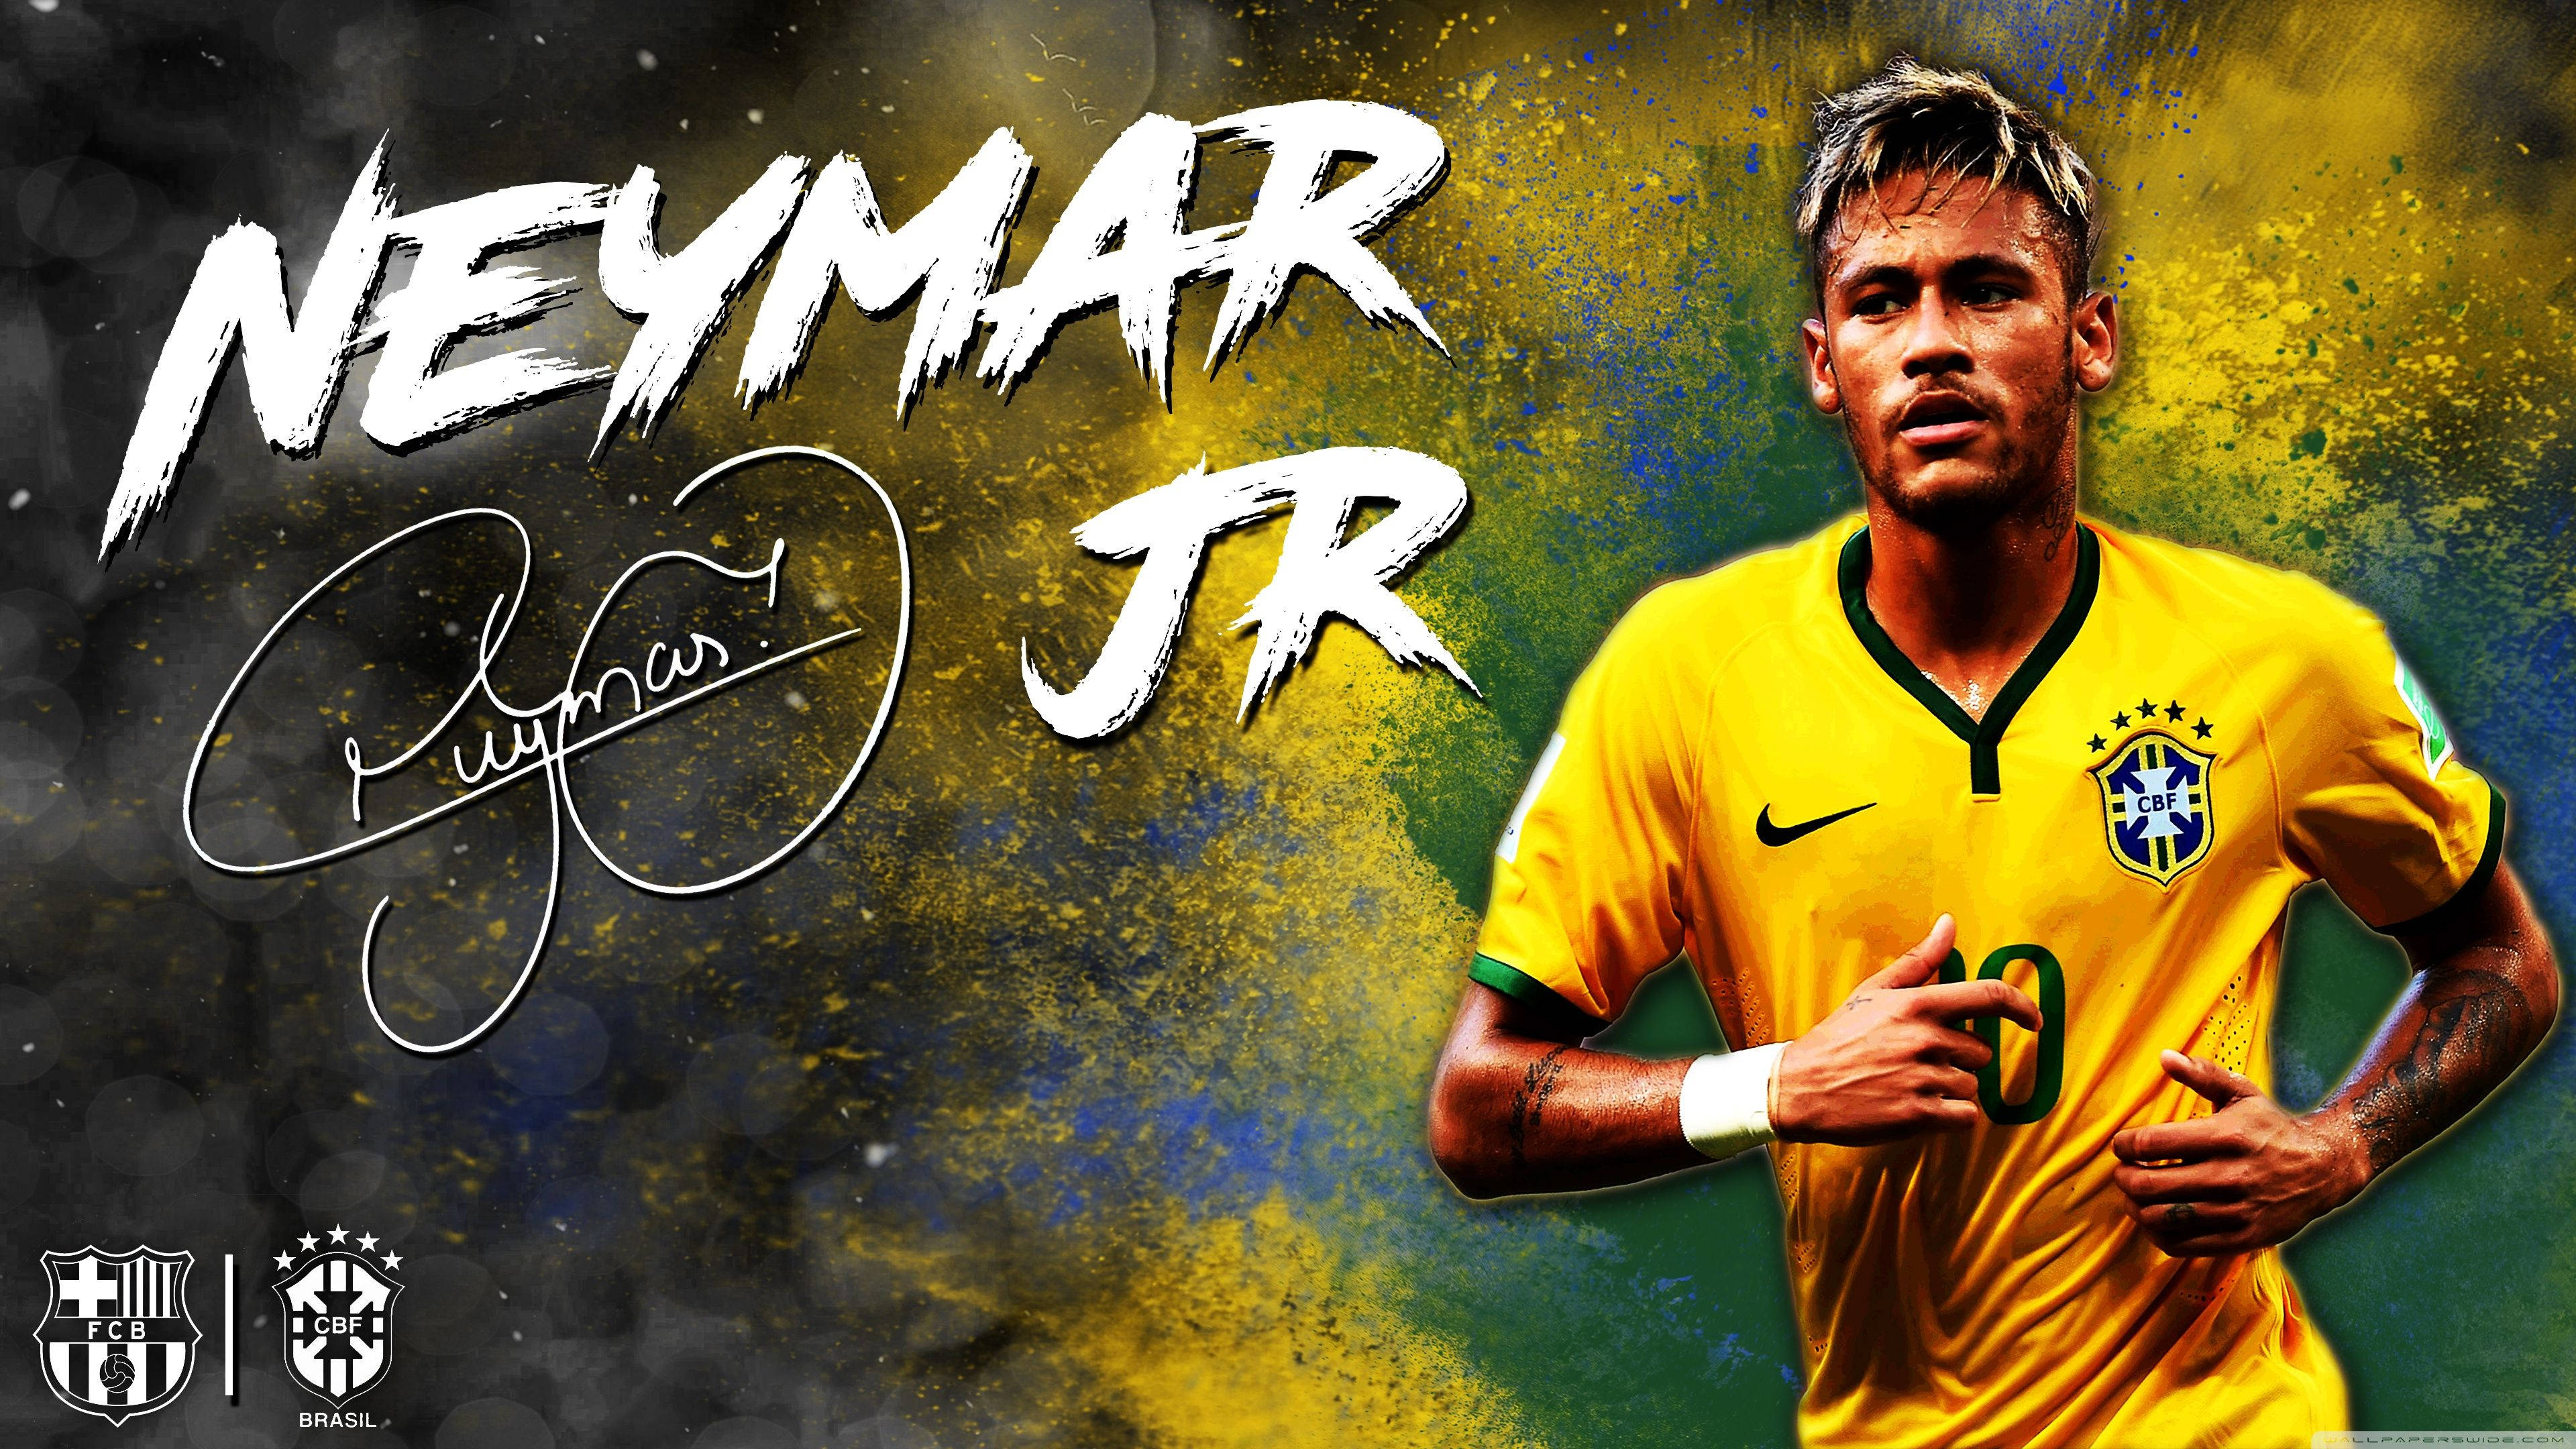 Bộ sưu tập hình nền fan art của Neymar sẽ khiến bất kỳ fan hâm mộ nào phát cuồng. Hãy xem những hình ảnh liên quan để thưởng thức sự sáng tạo và tình yêu dành cho Neymar qua từng nét vẽ. (Translation: Neymar\'s fan art wallpaper collection will make any fan go wild. Check out the related images to appreciate the creativity and love for Neymar through every stroke.)